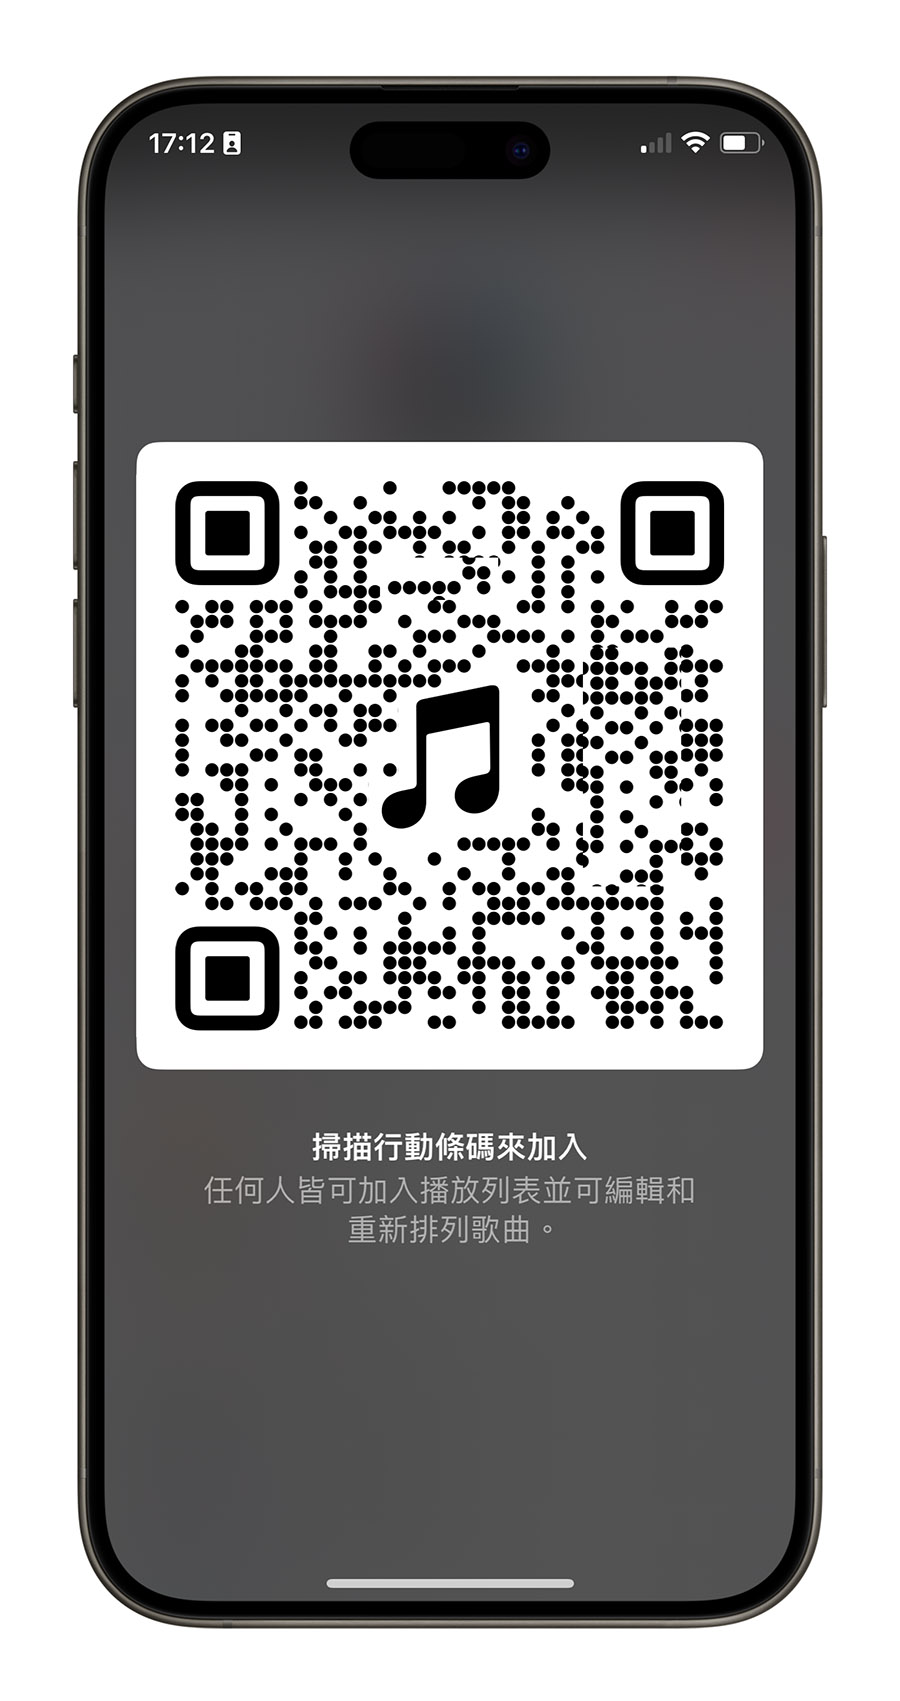 iPhone iOS 17.3 Apple Music 合作播放清單